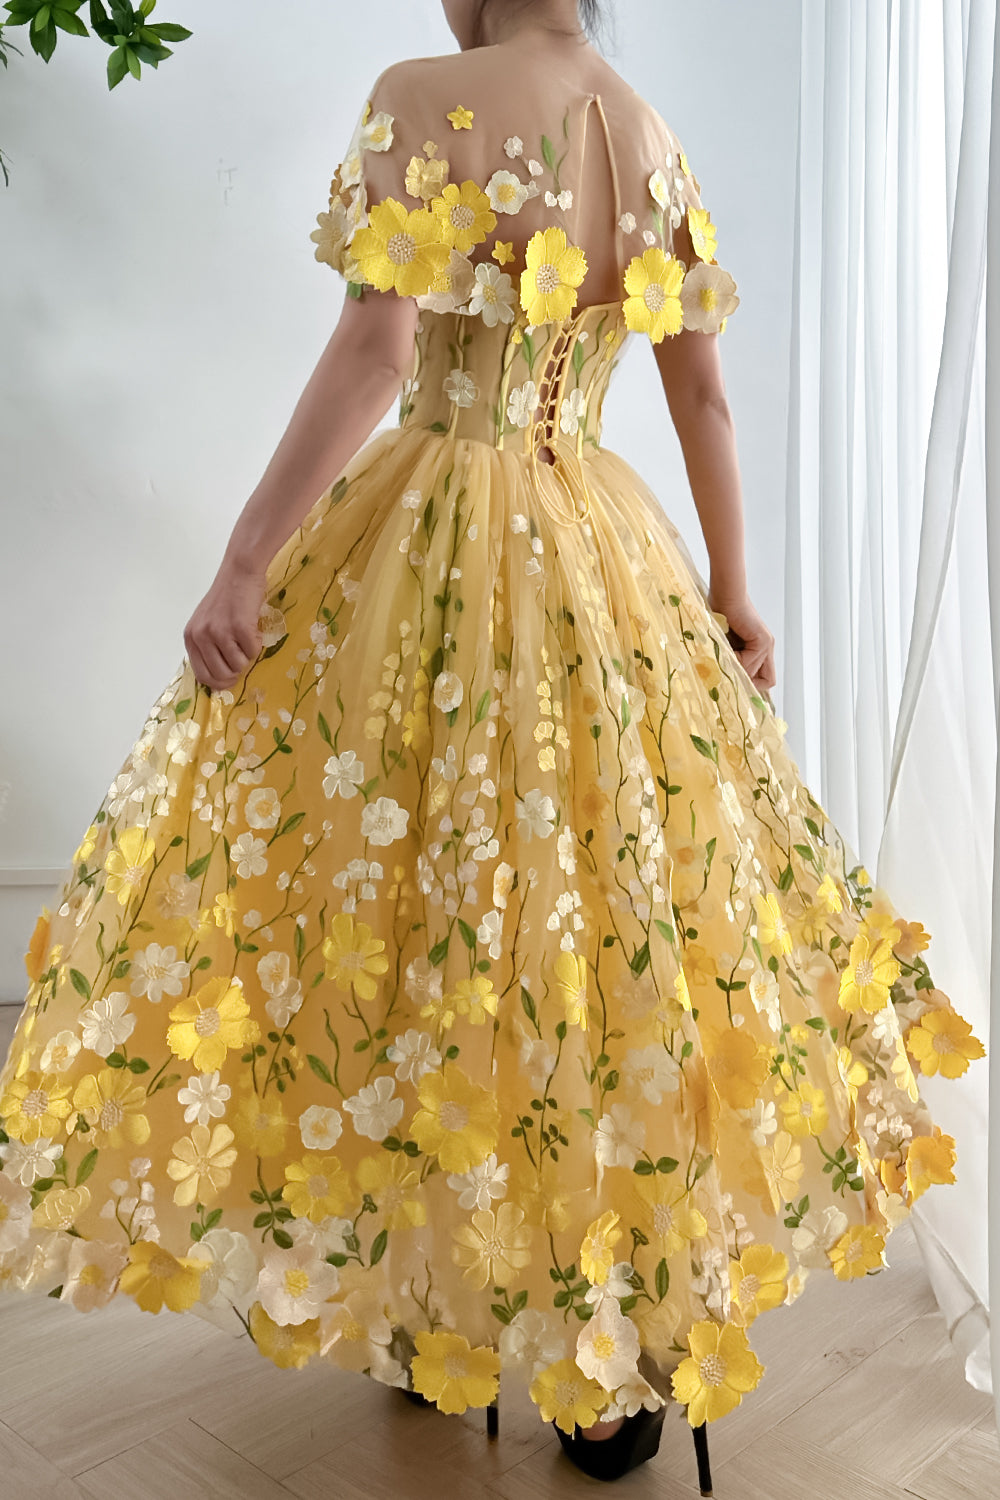 MissJophiel Strapless Floral Corset Yellow Dress with Removable Cape